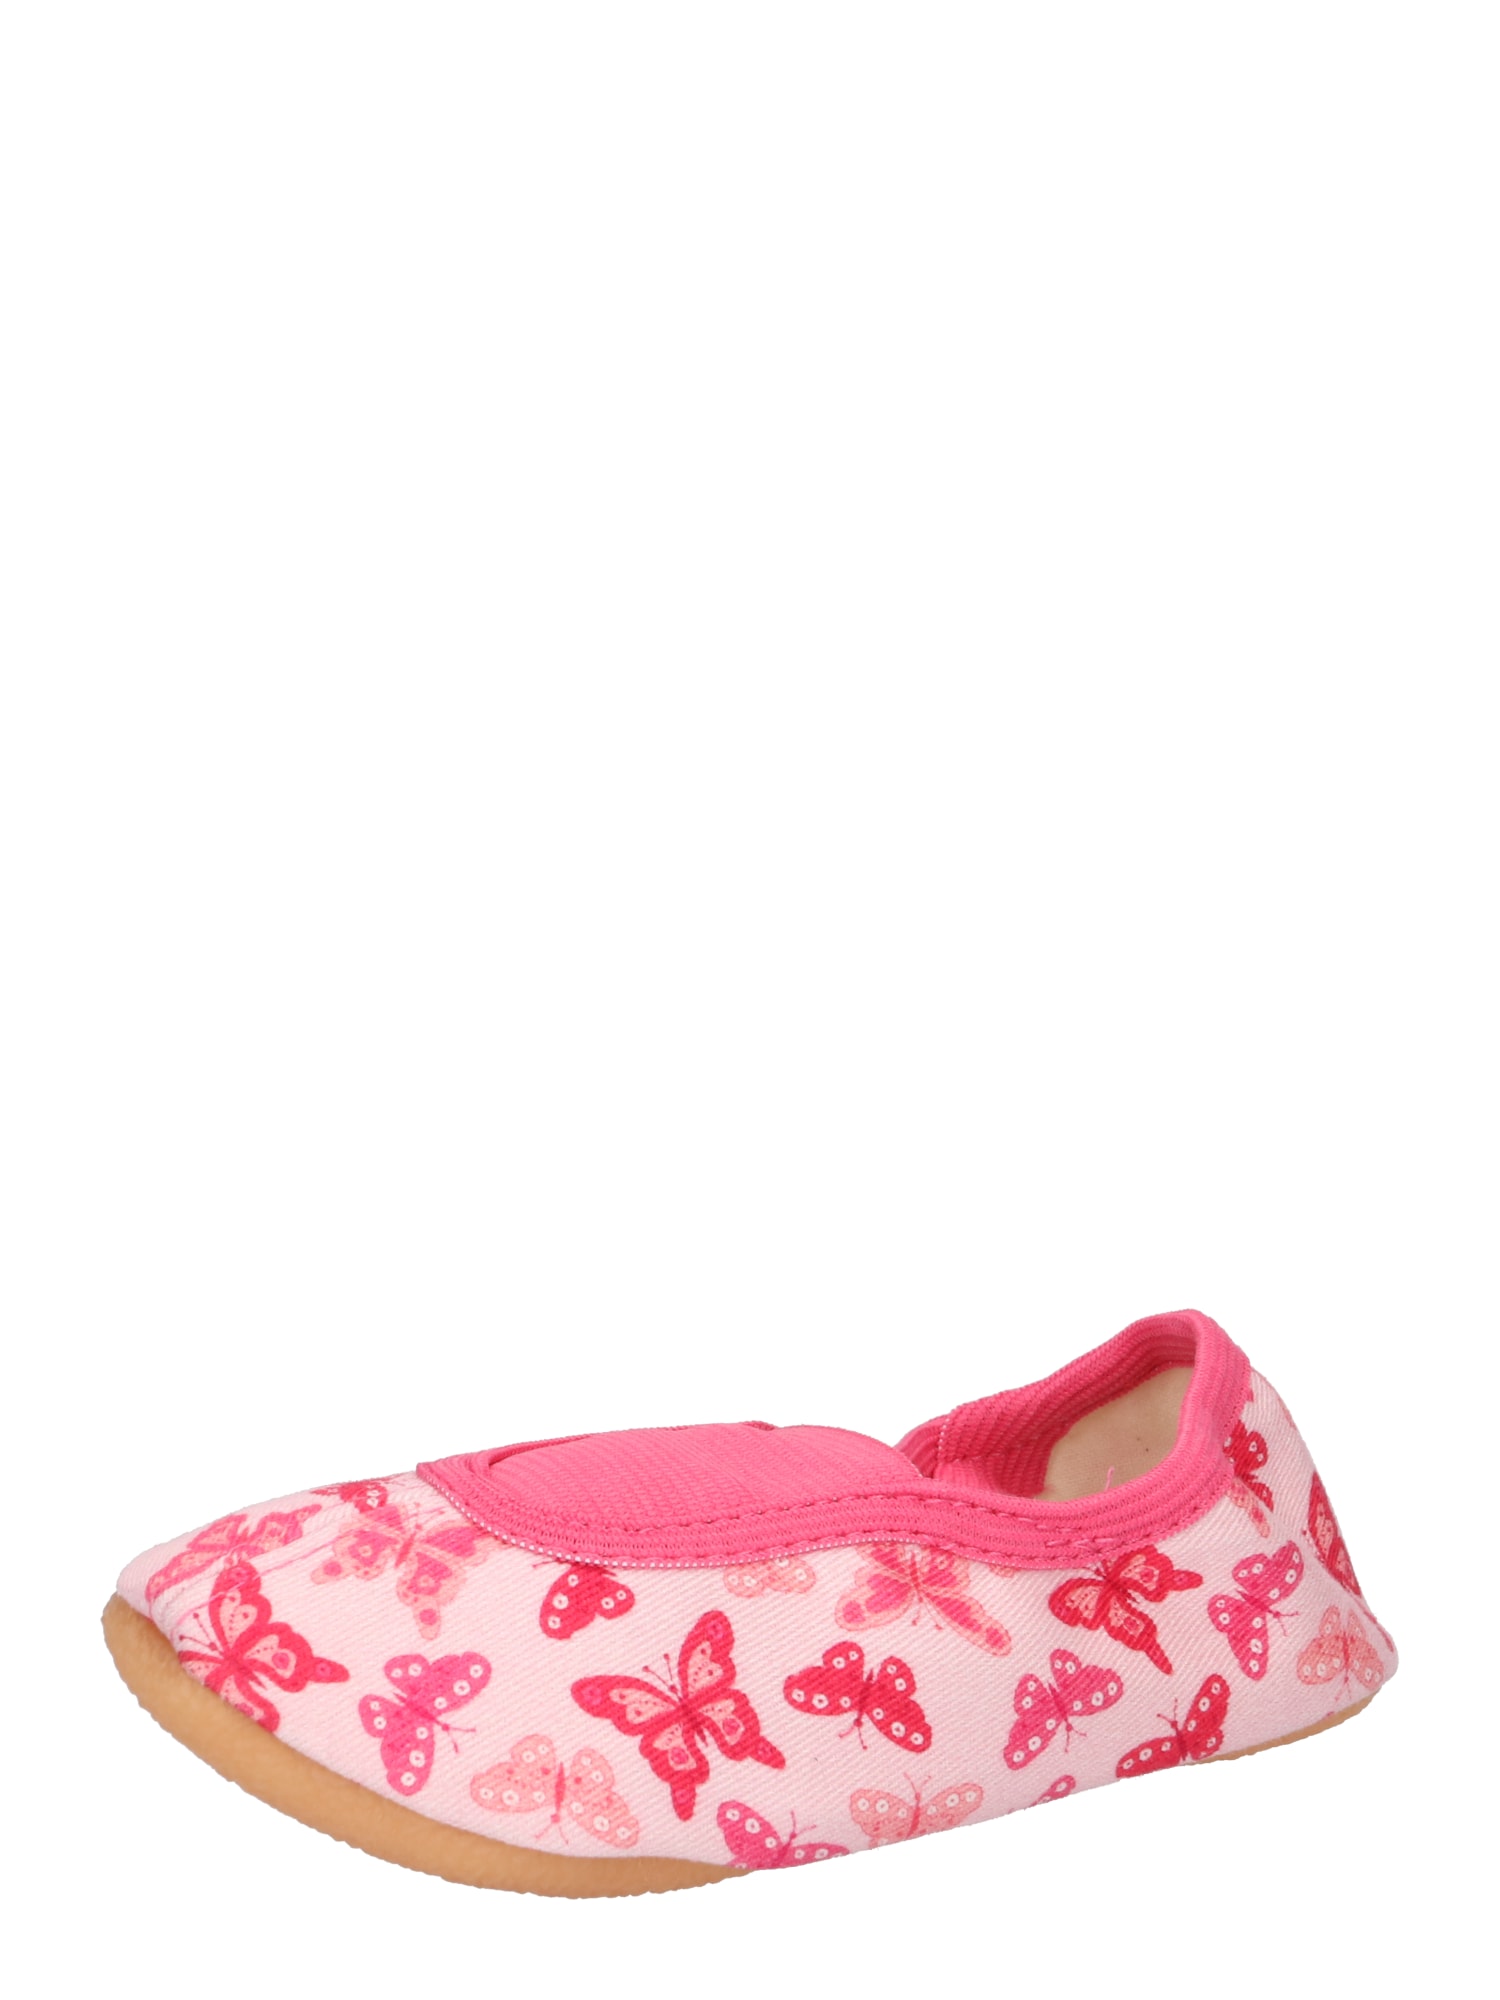 BECK Házi cipő 'Papillon'  pasztell-rózsaszín / pitaja